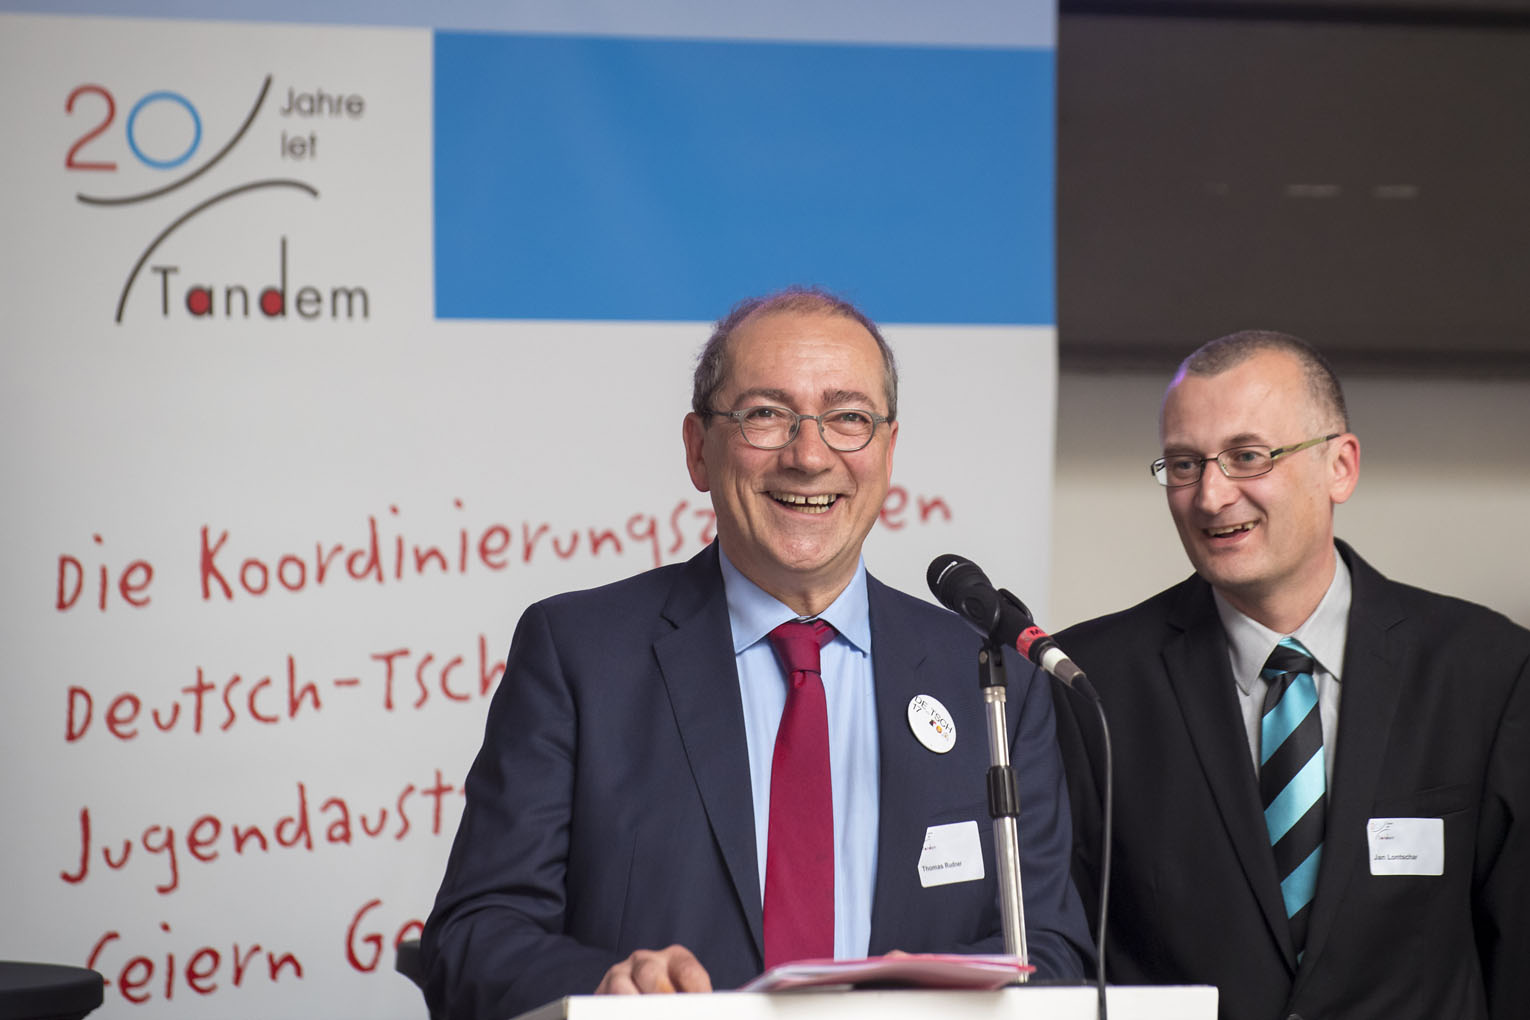 Begrüßten die Gäste der Jubiläumsveranstaltung in Berlin: die beiden Tandem-Leiter Thomas Rudner (links) und Jan Lontschar. (Foto: Franz Brück, Berlin)